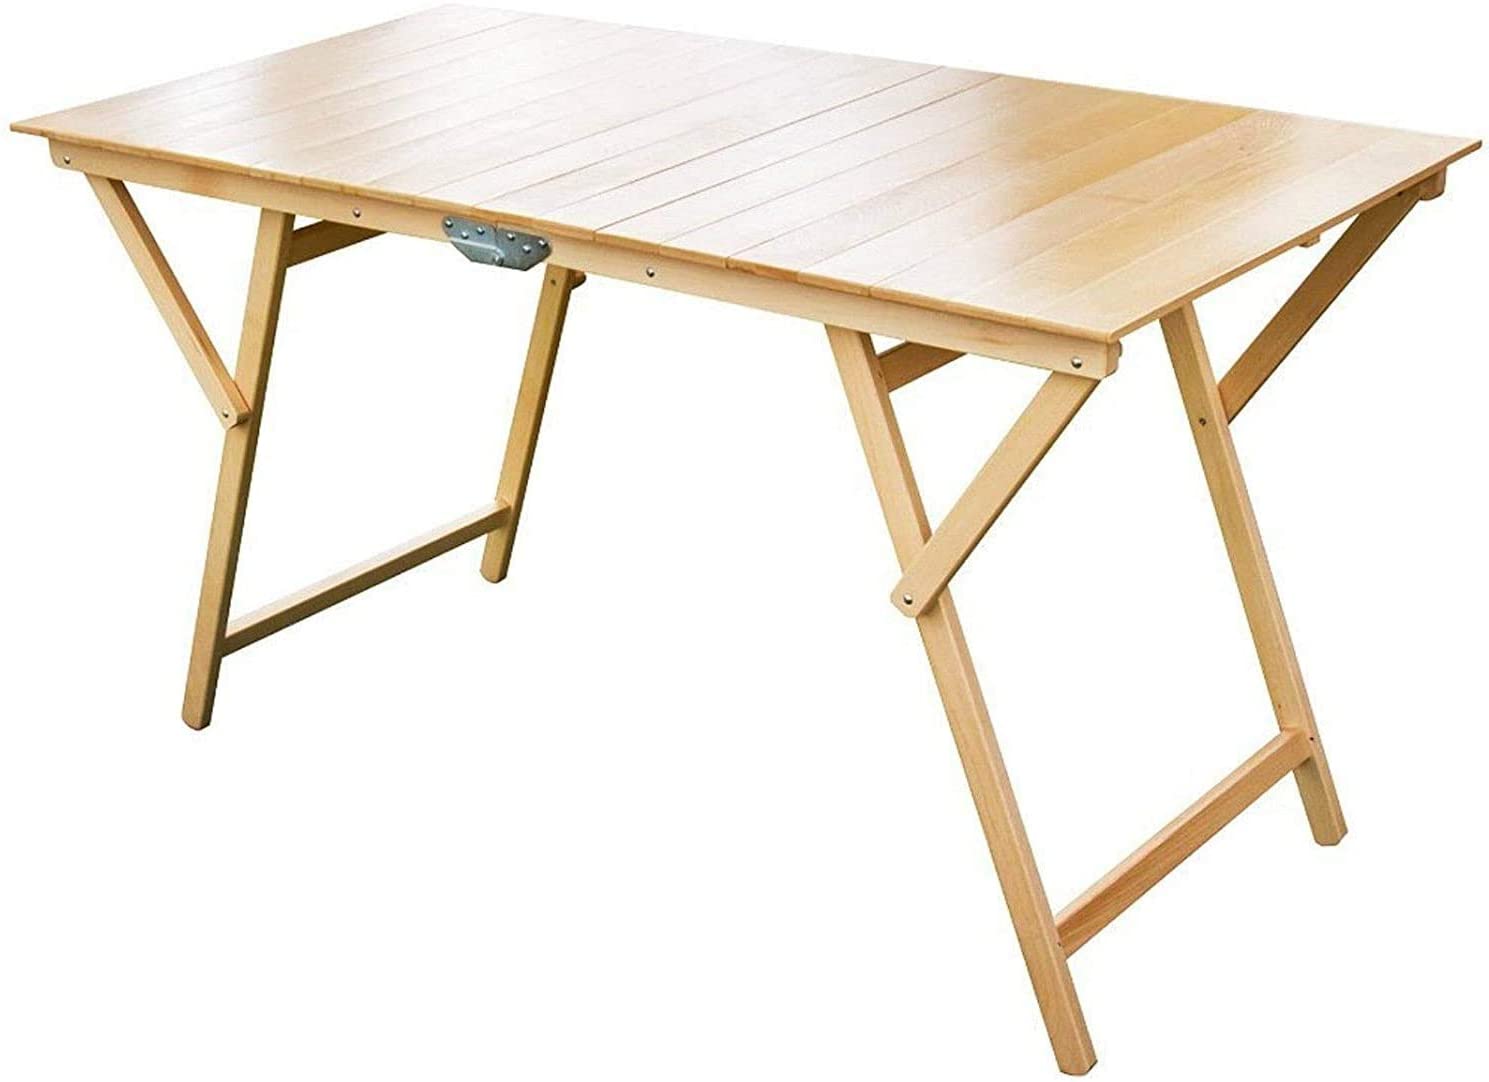 Table pliante 140 x 70 cm, table pliante en bois naturel pour jardins